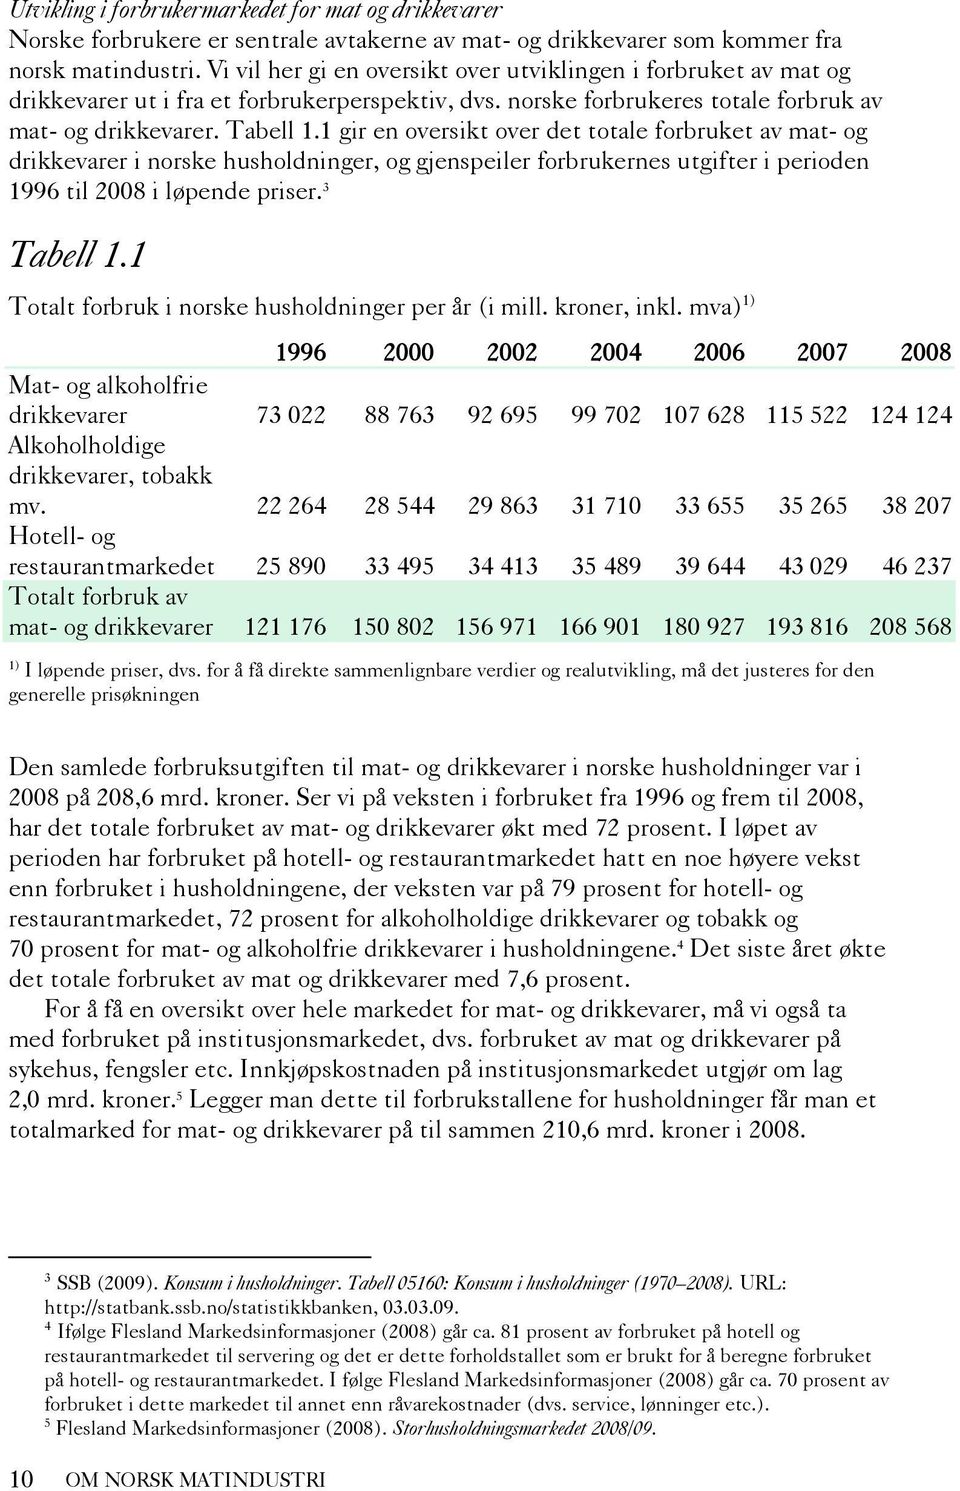 1 gir en oversikt over det totale forbruket av mat- og drikkevarer i norske husholdninger, og gjenspeiler forbrukernes utgifter i perioden 1996 til 2008 i løpende priser. 3 Tabell 1.